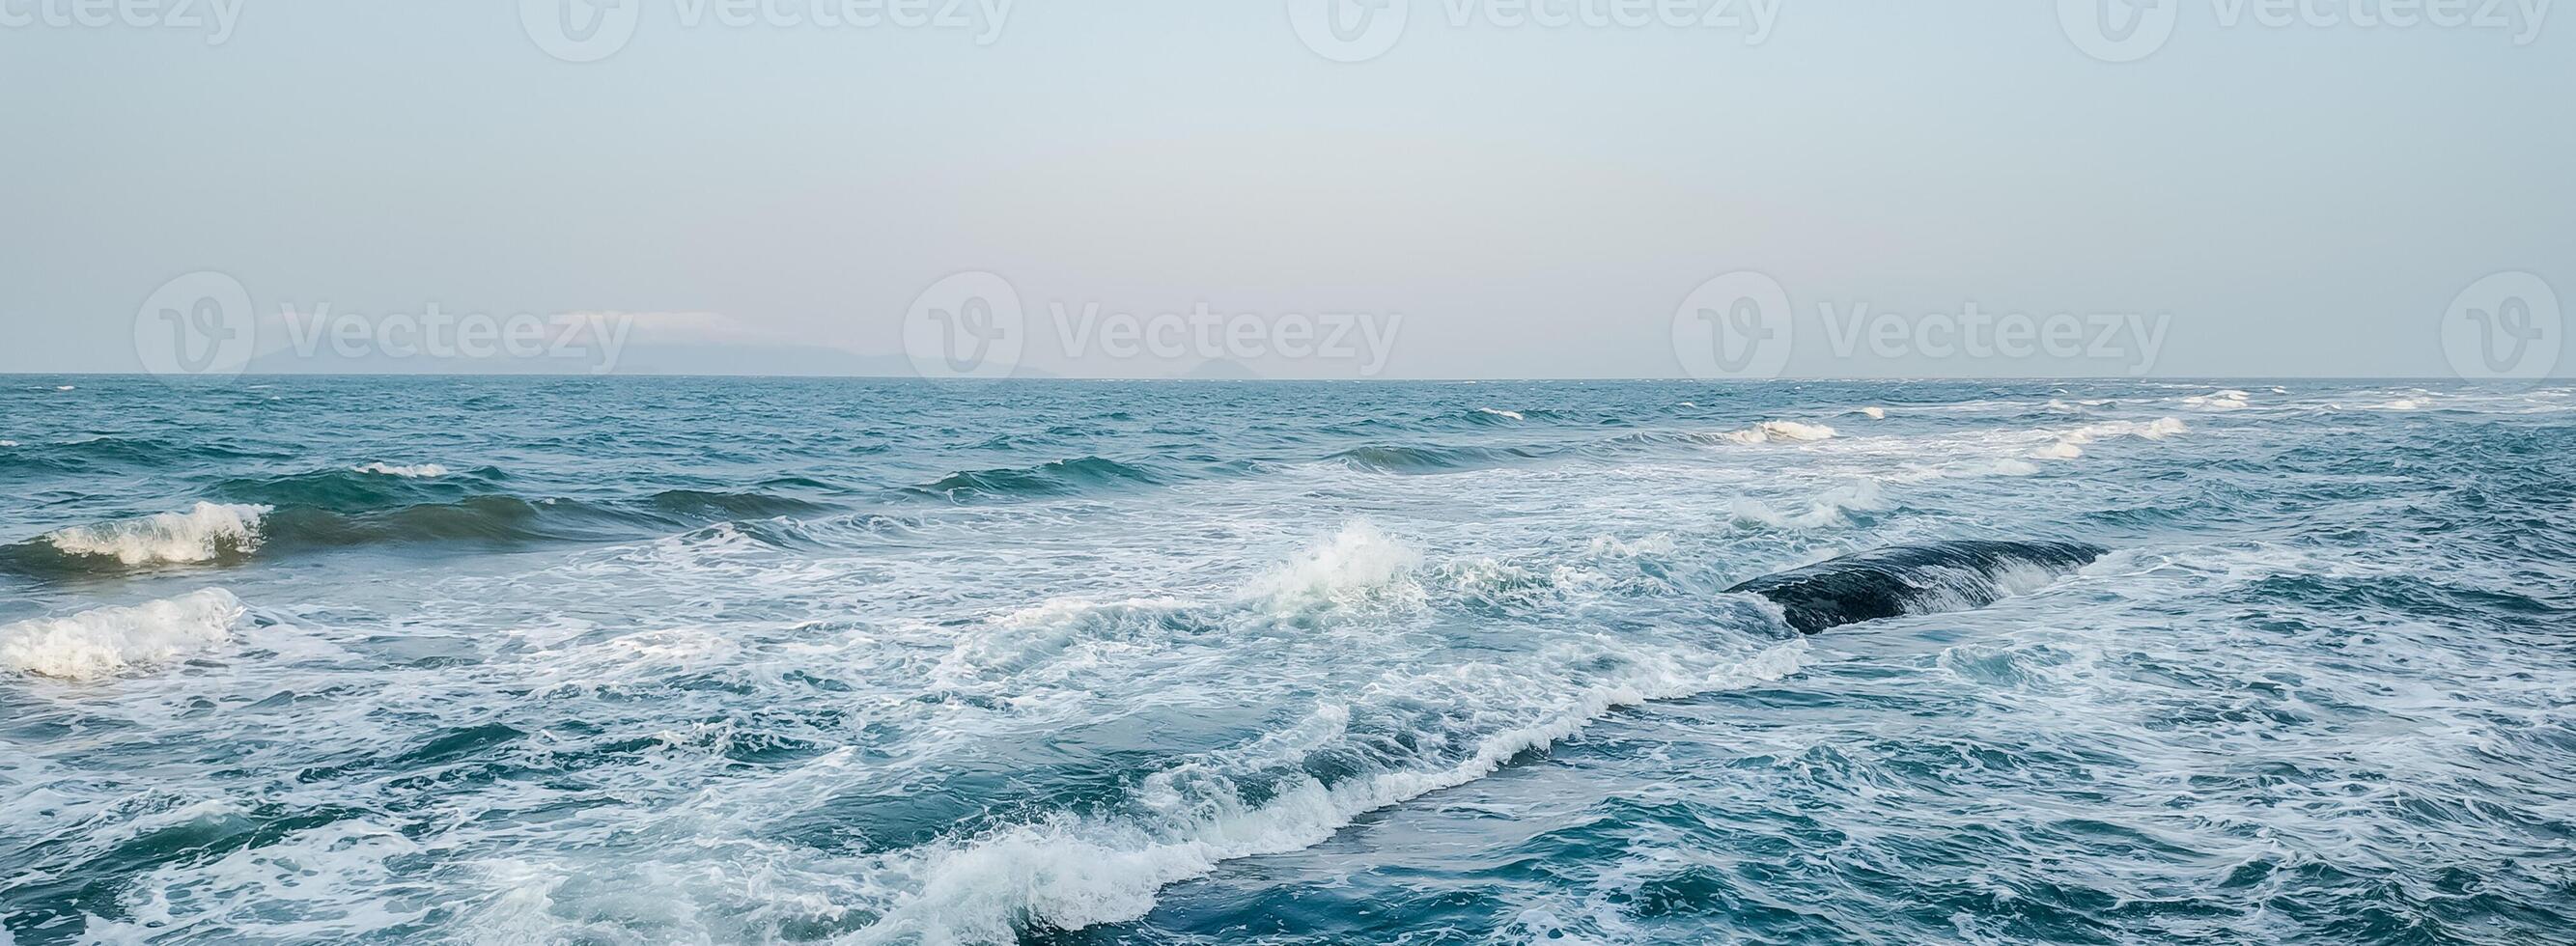 Oceano horizonte, tranquilo escapar o marina aventuras foto